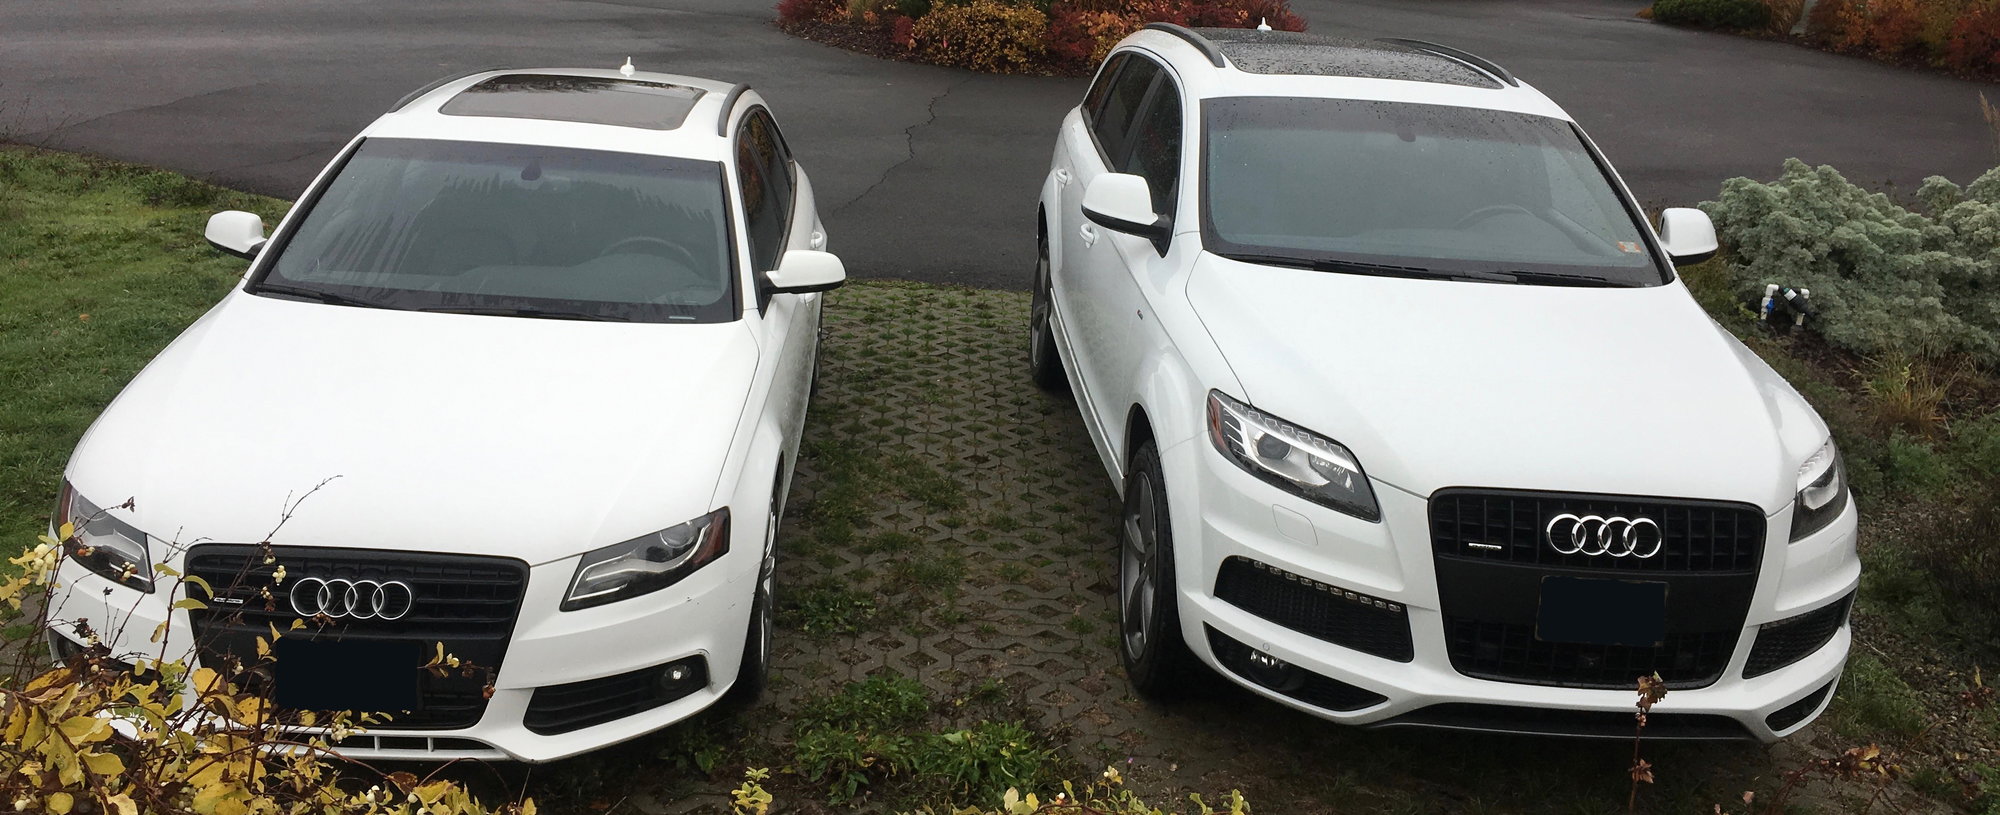 Audi Q5 Ibis White Vs Glacier White